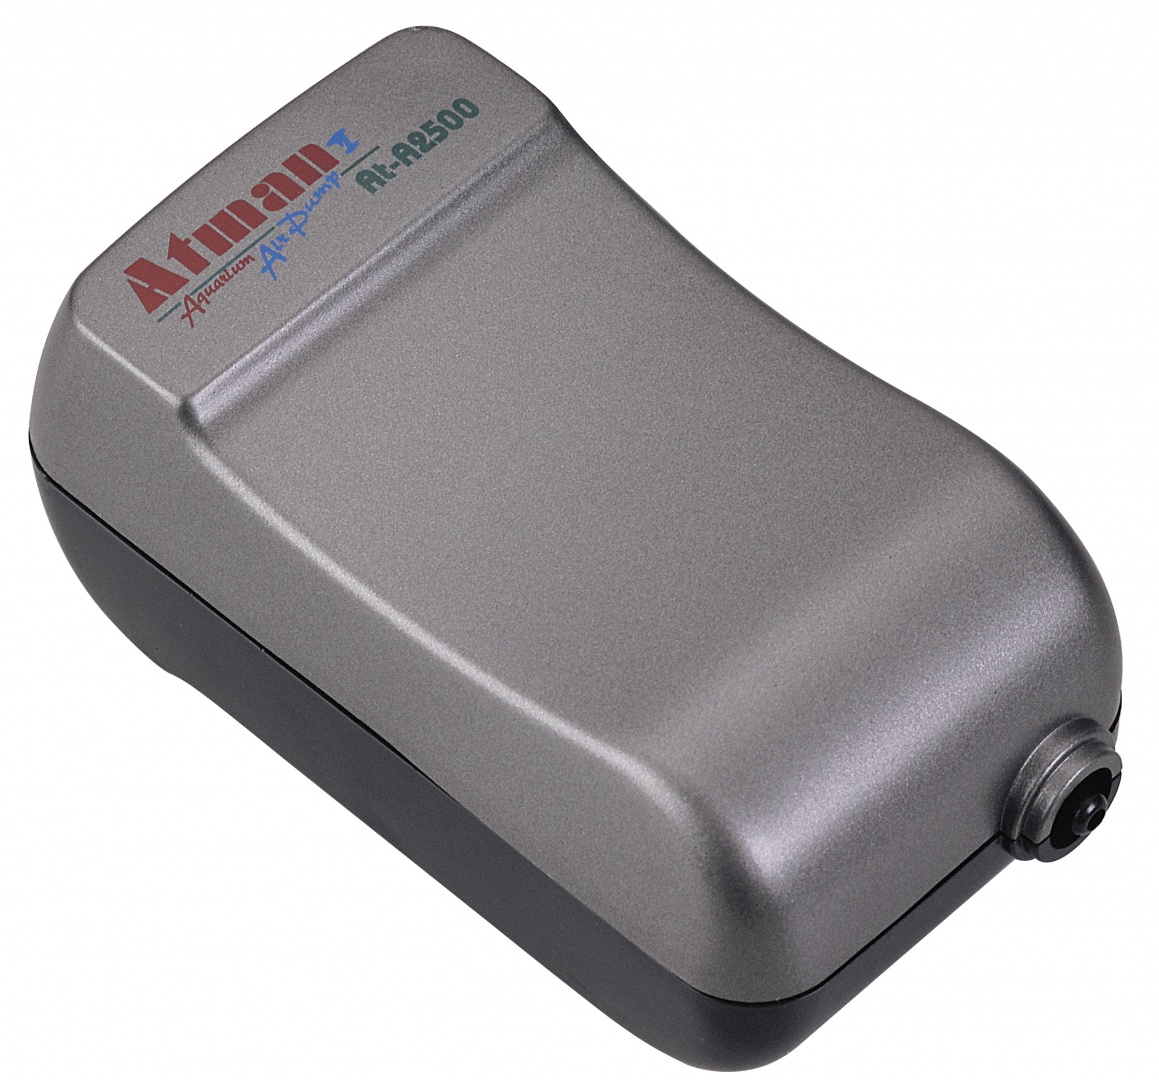 Компрессор для аквариума Atman ATM-AT-A2500 двуканальный, 120л/ч